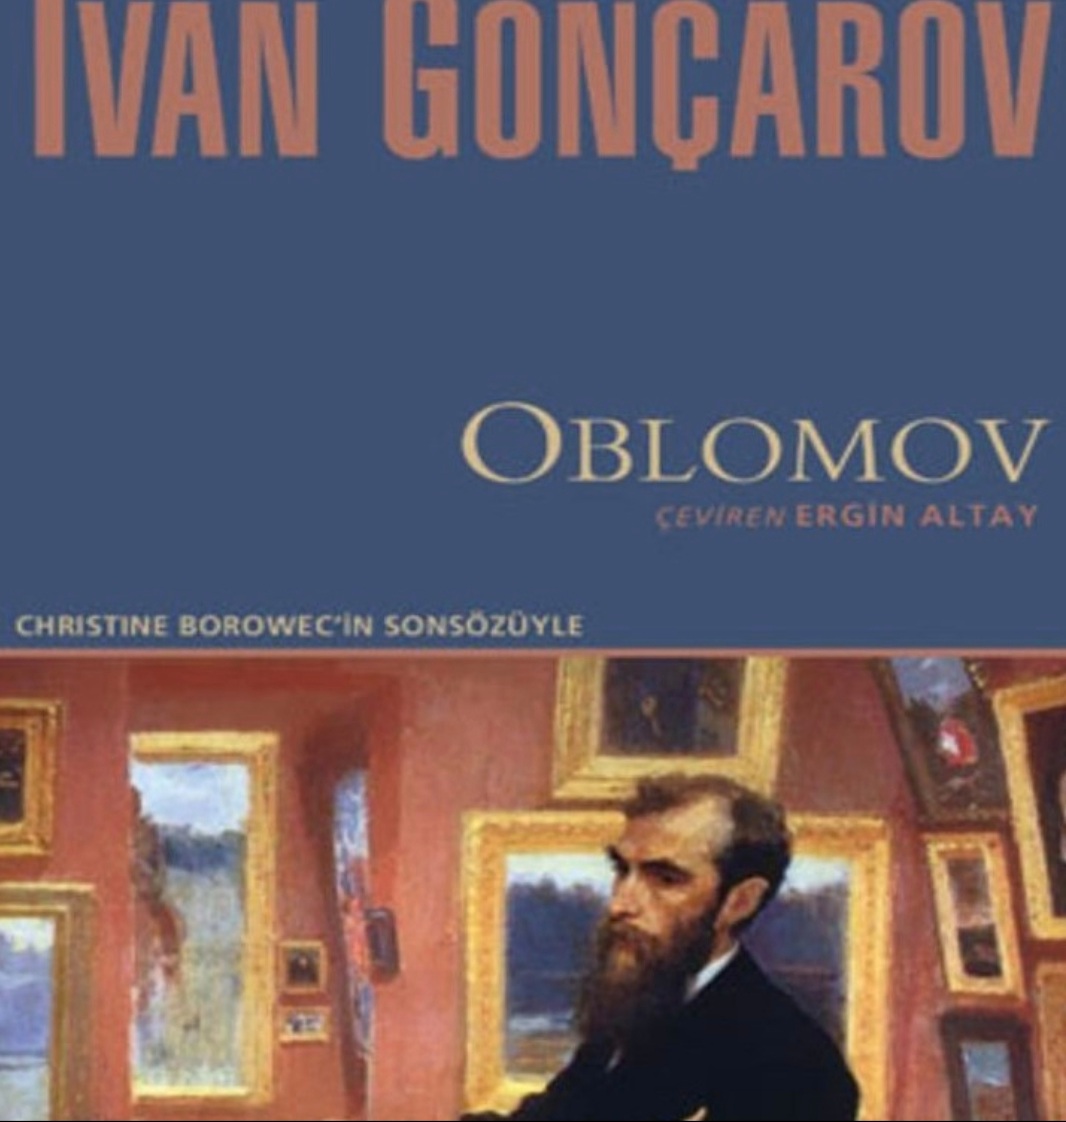  IVAN ALEKSANDROVİÇ GONÇAROV VE OBLOMOV (1812-1891)    